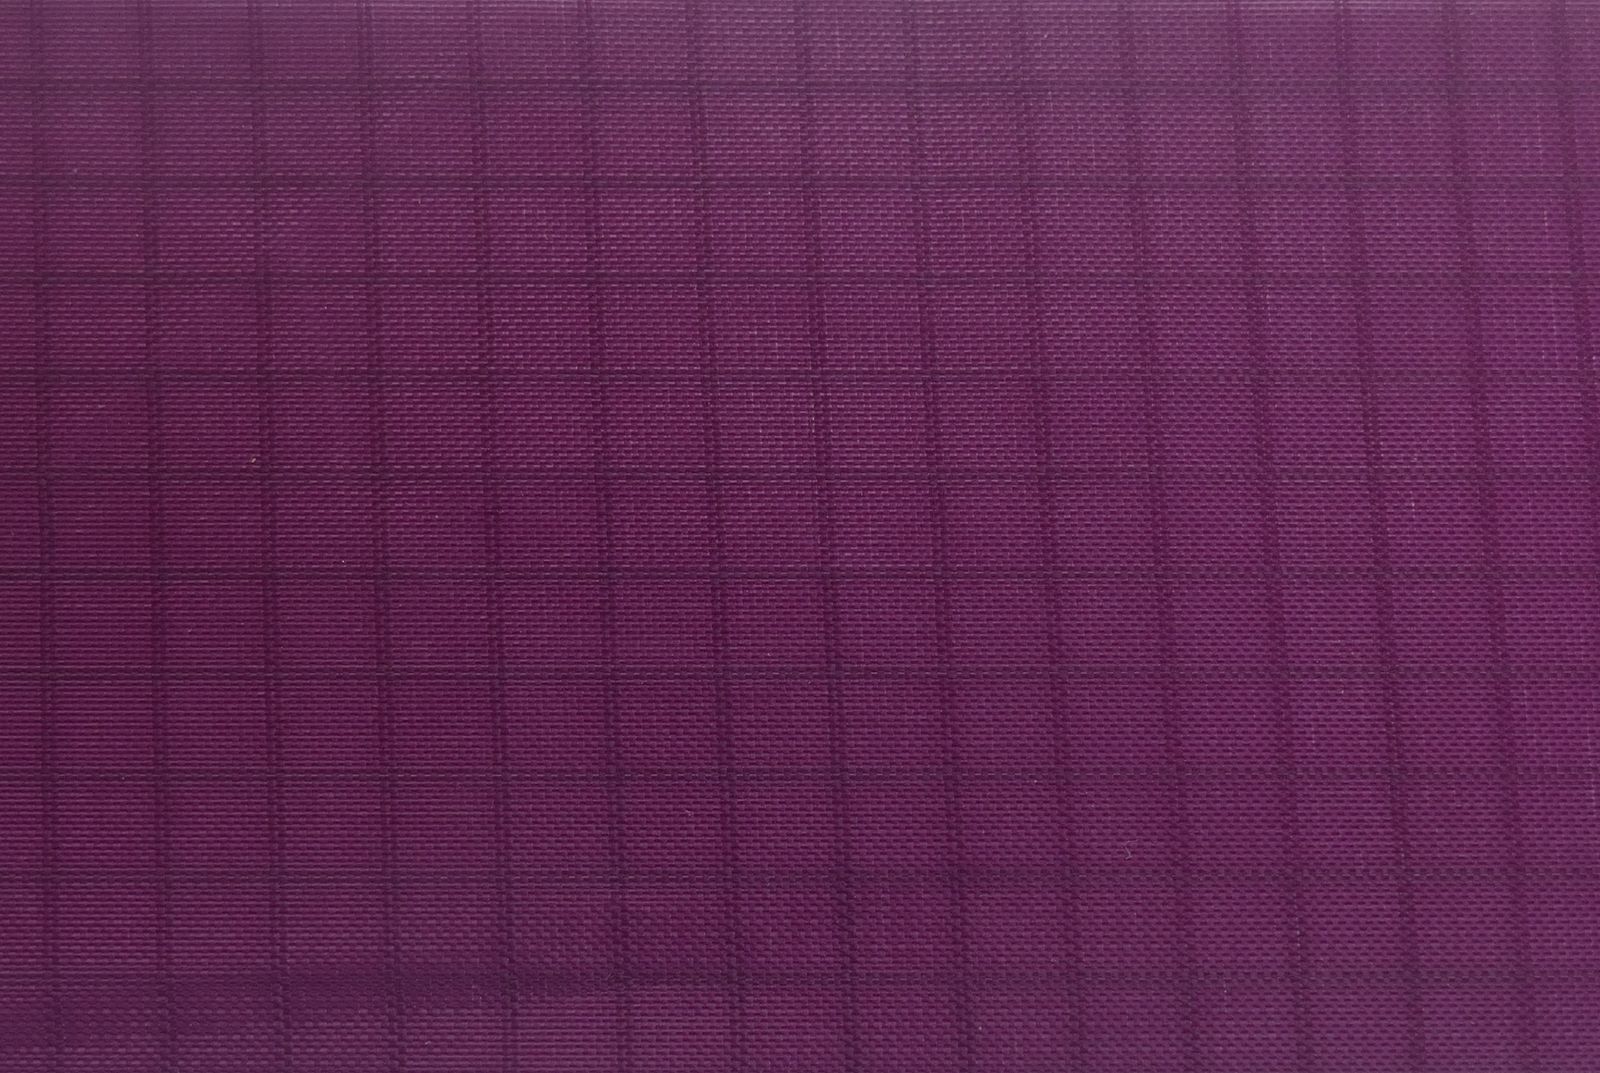 50 Meter - Elltex Spinnakertuch-Nylon reißfestes Gewebetuch mit Ripstop 150 cm breit dark purple PU-beschichtet für Drachen- und Modellbau